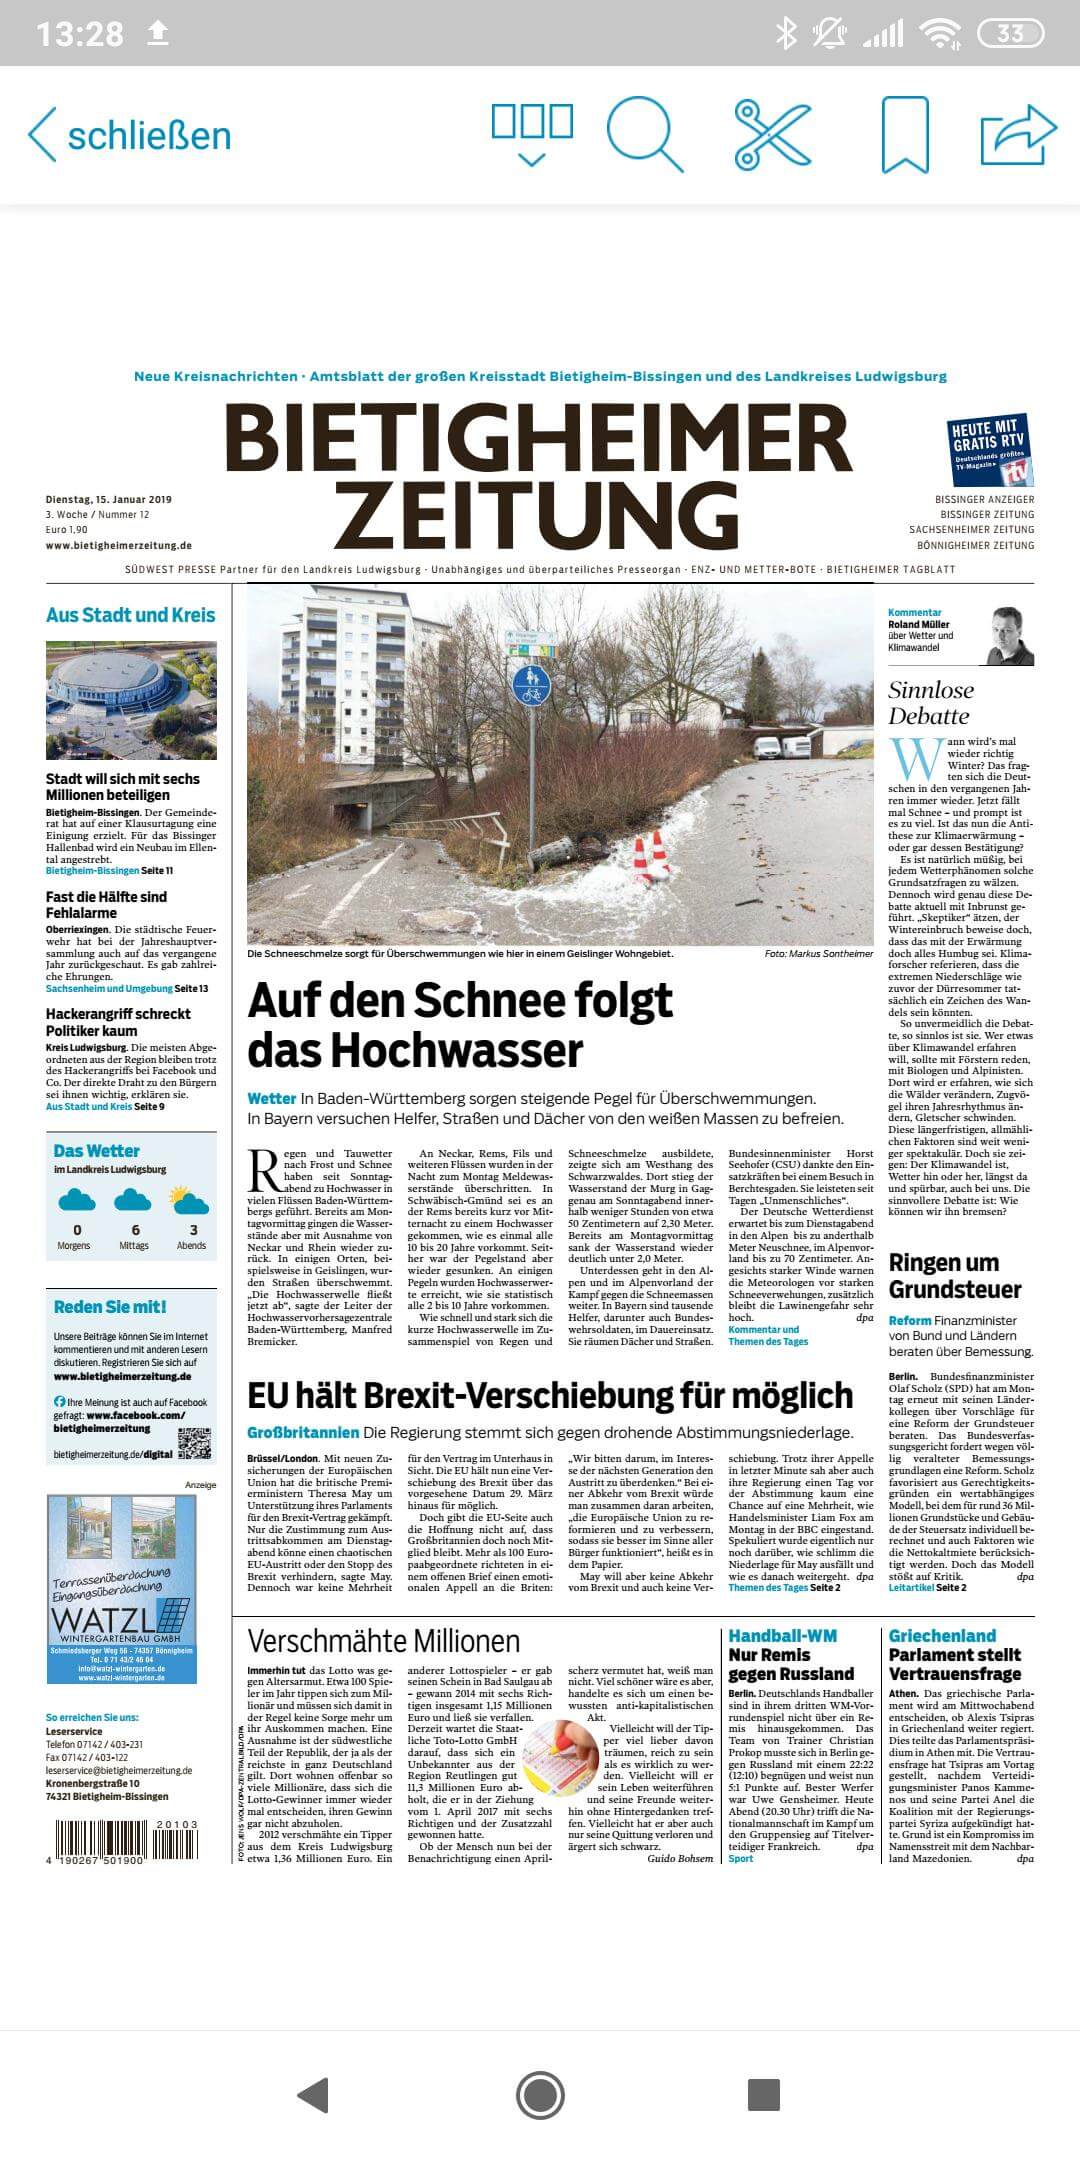 German 54 Bietigheimer Zeitung